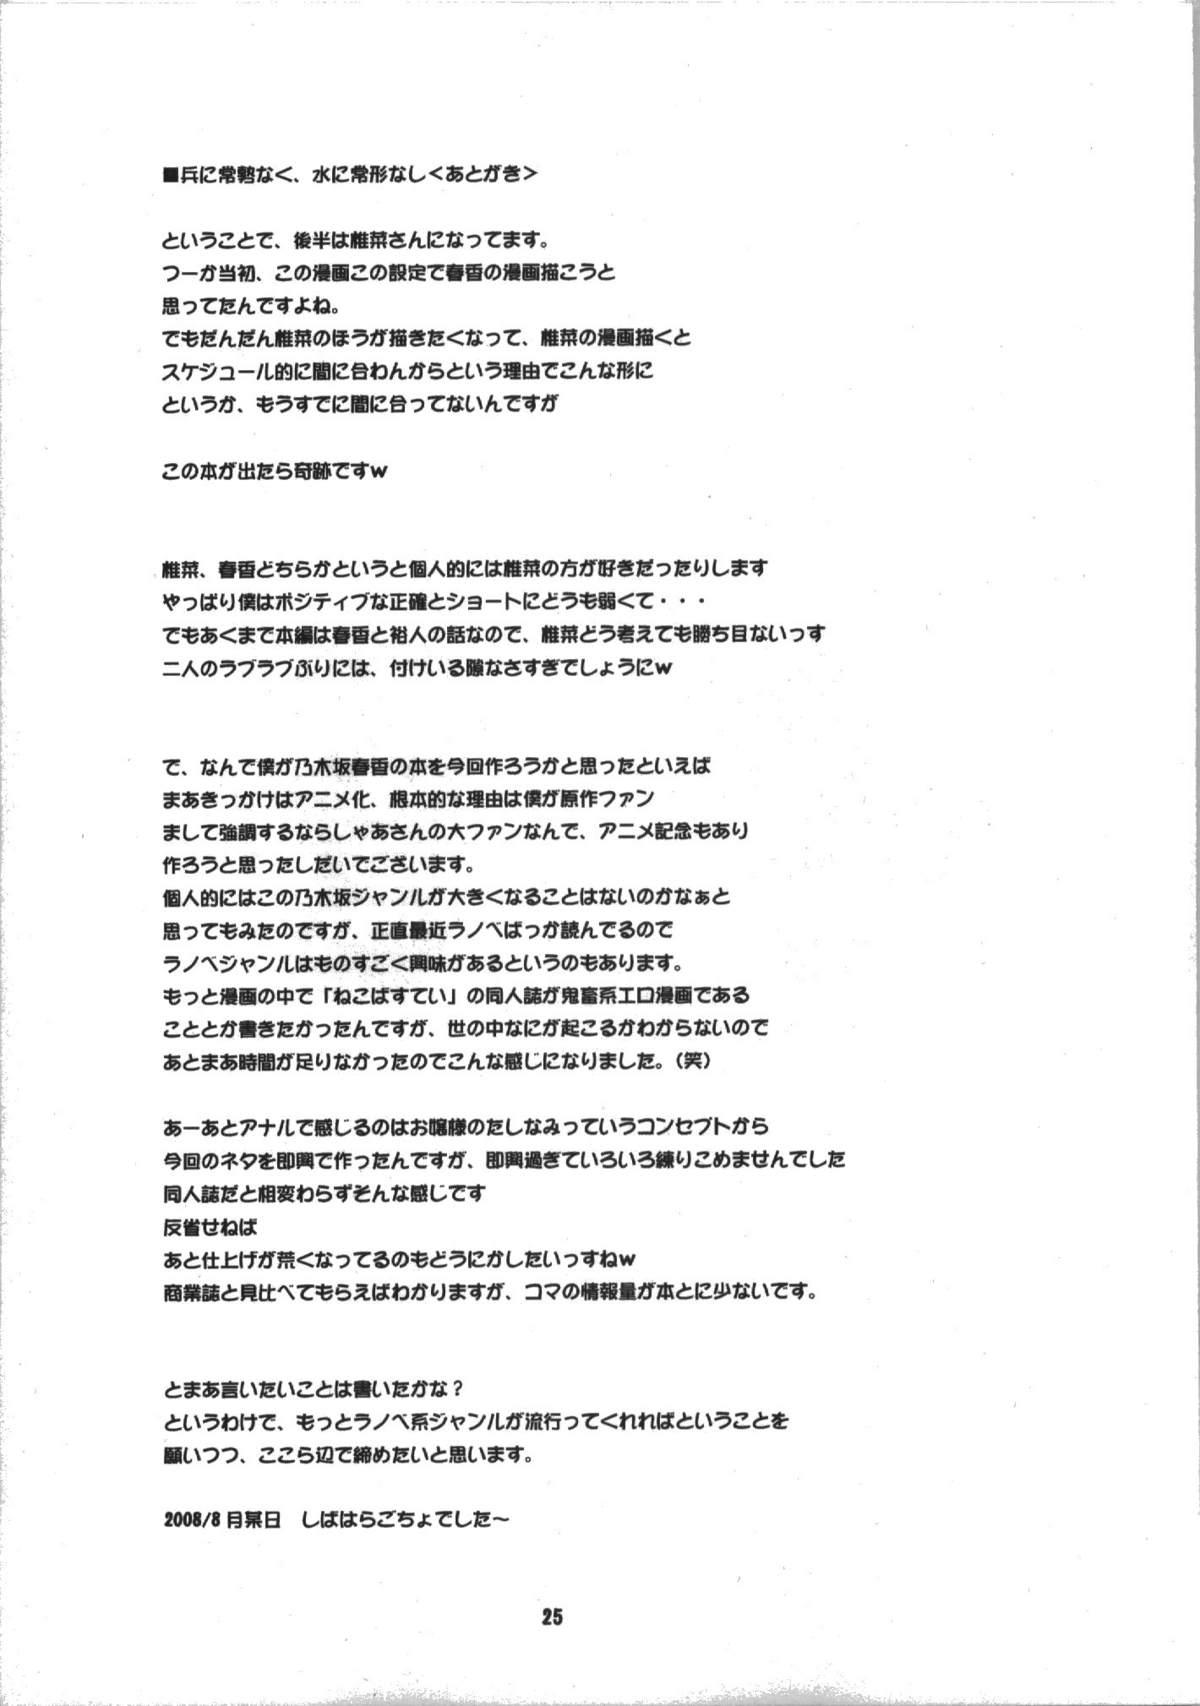 Viet Nam Haruka Secret Service - Nogizaka haruka no himitsu Ball Sucking - Page 25